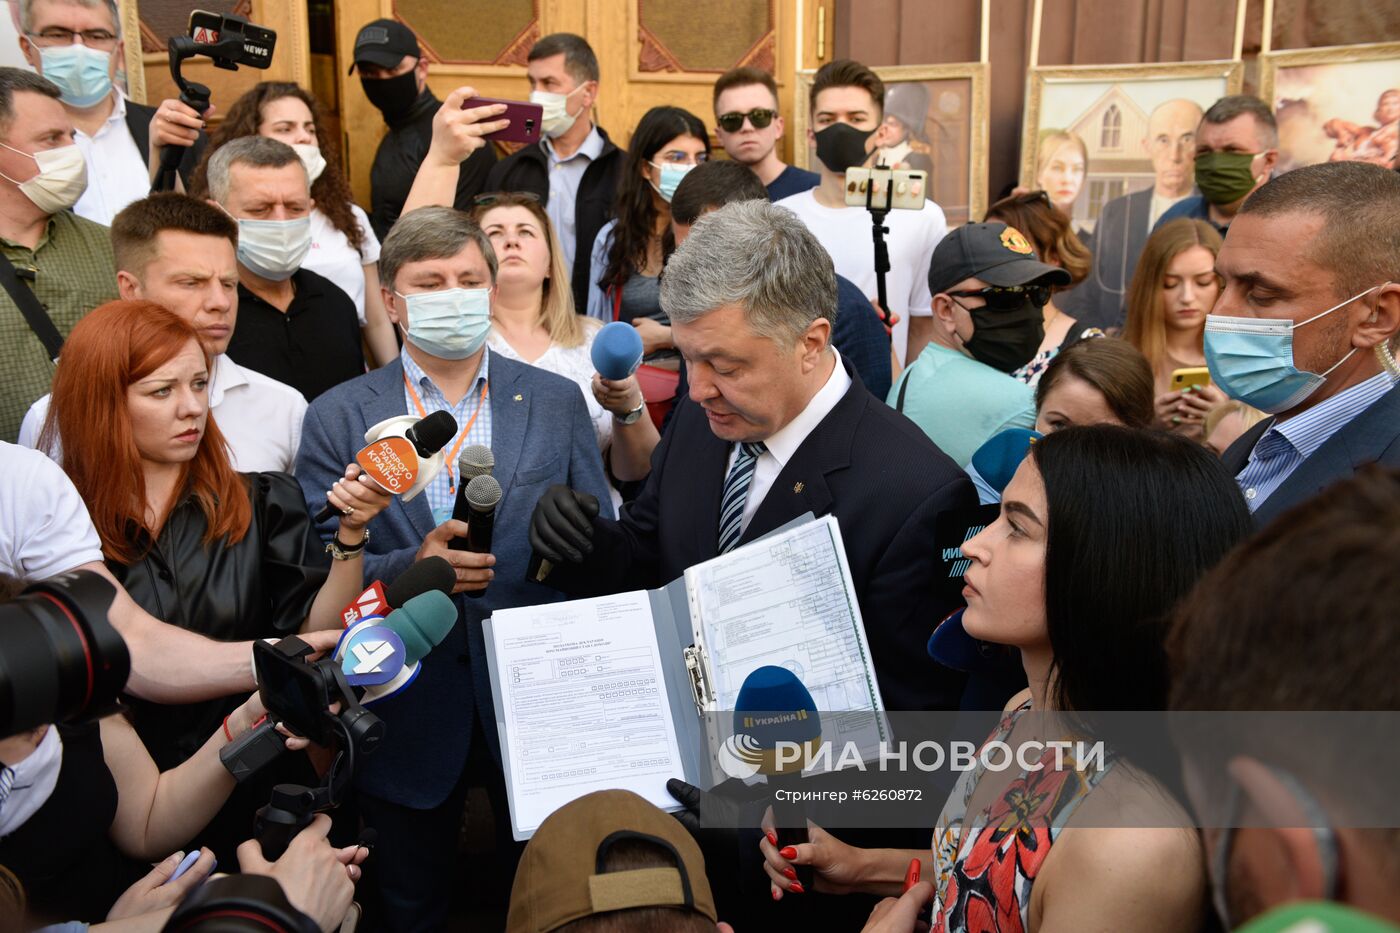 Экс-президент Украины П. Порошенко вызван на допрос